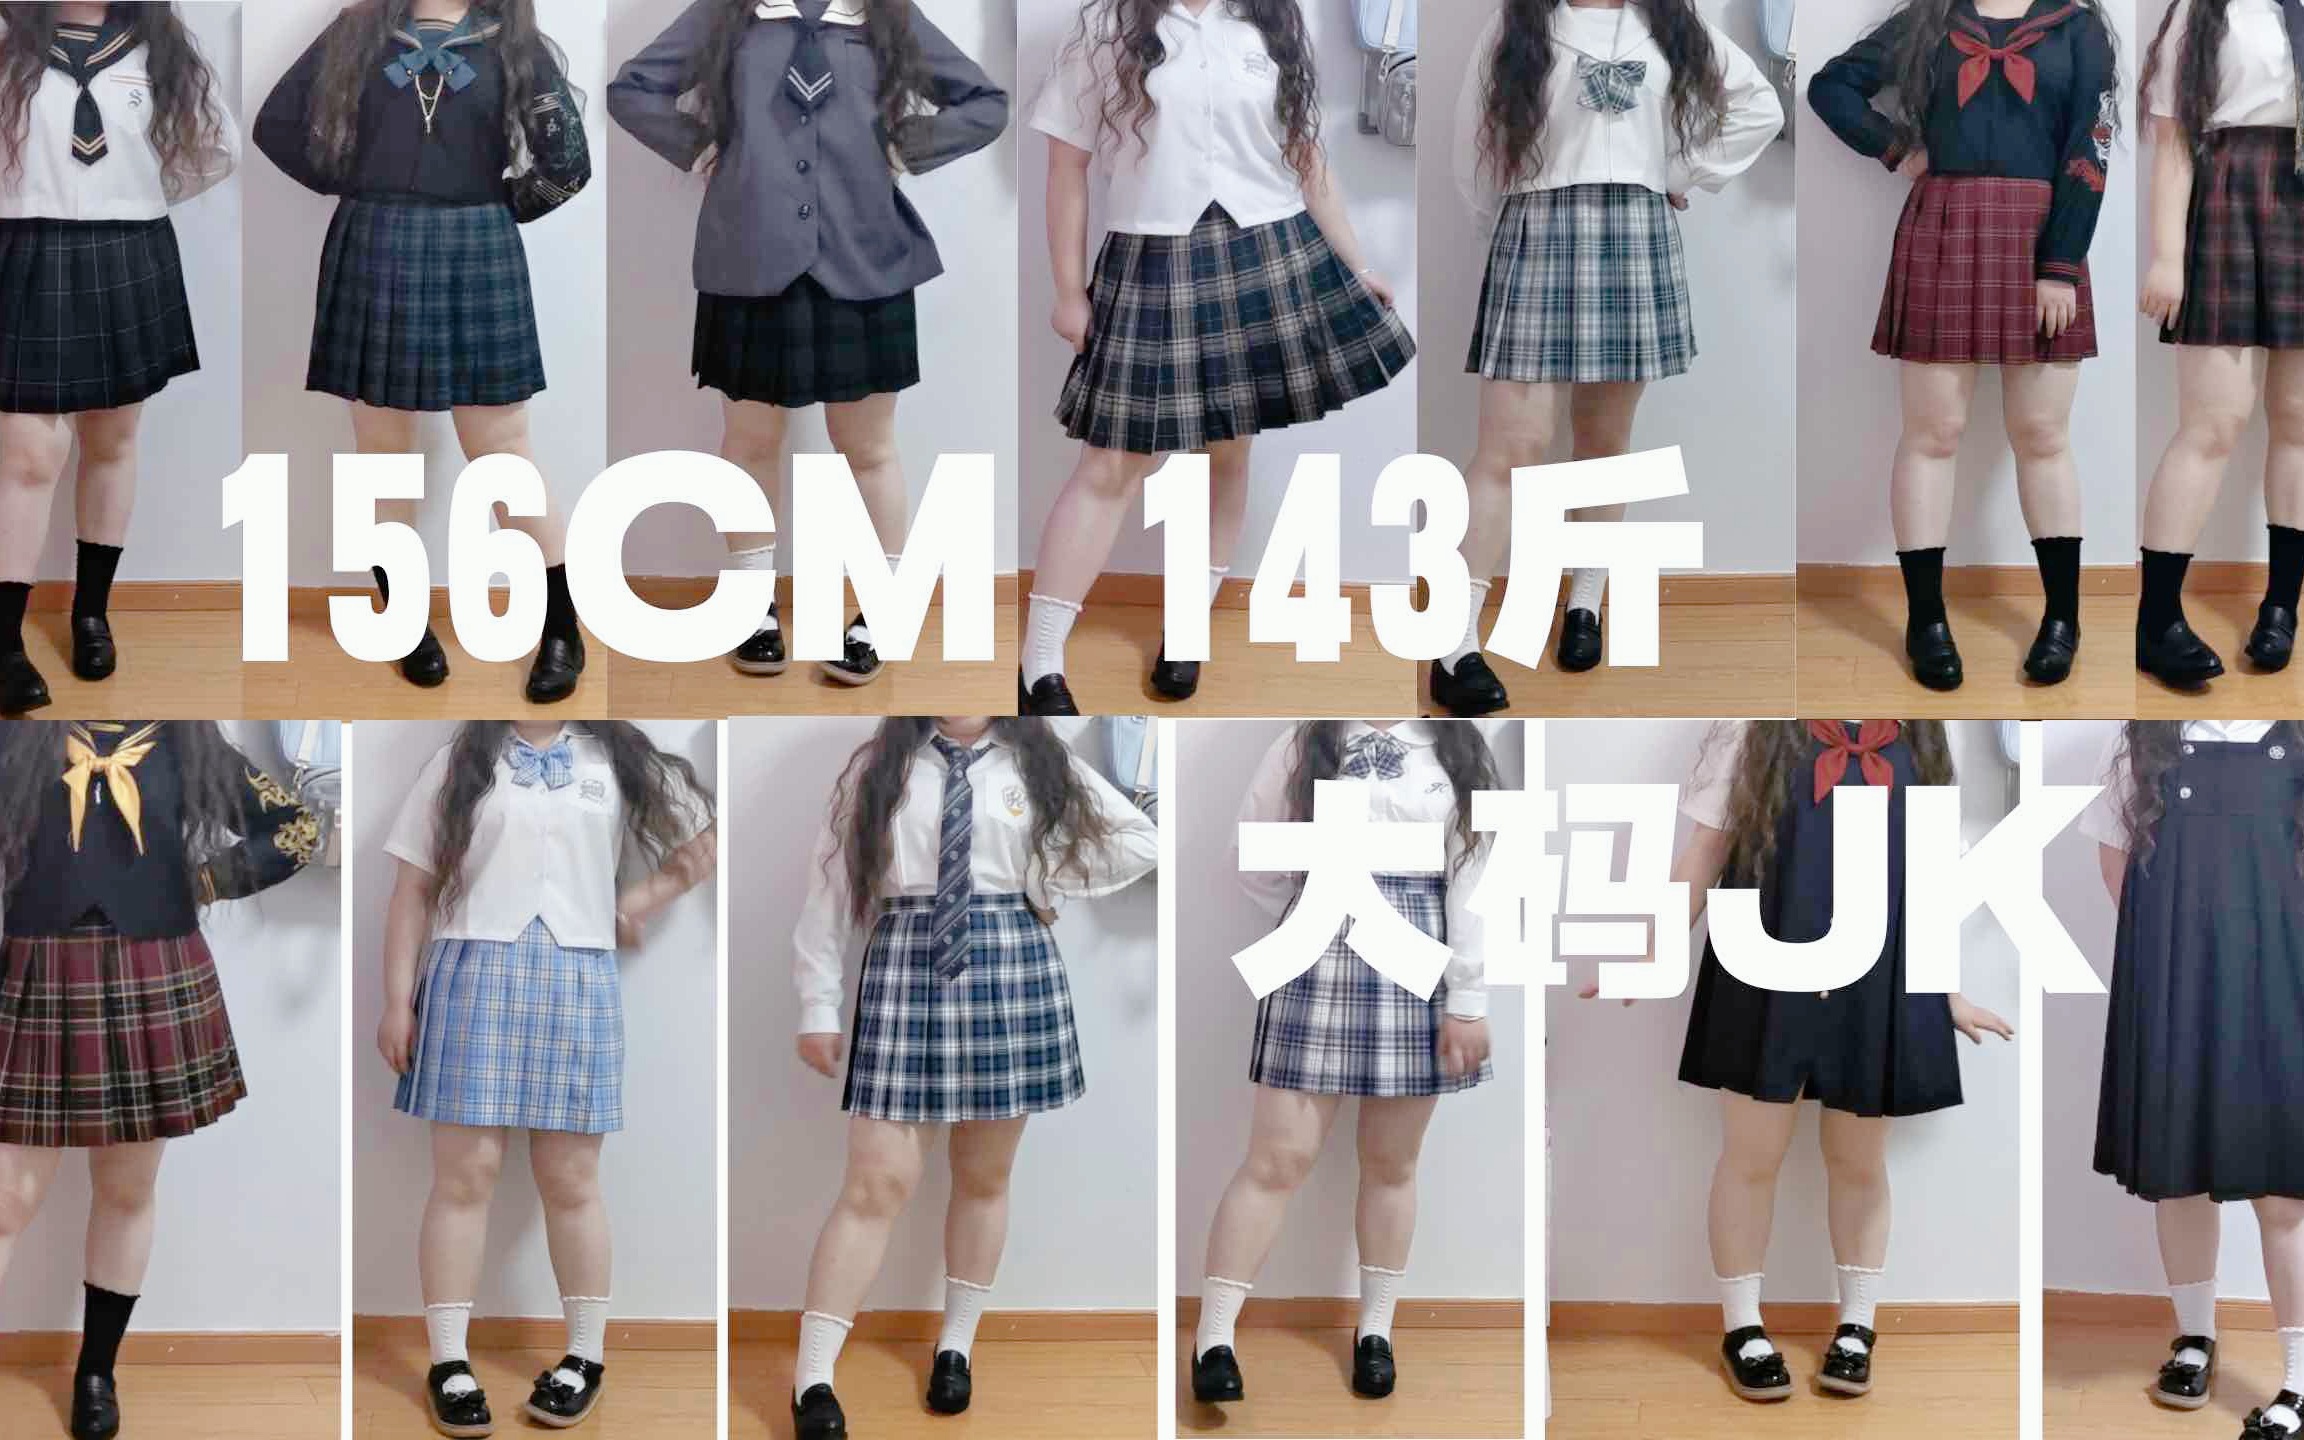 【JK制服】156/143斤 真实大码jk初体验 谁说胖女孩不能穿制服